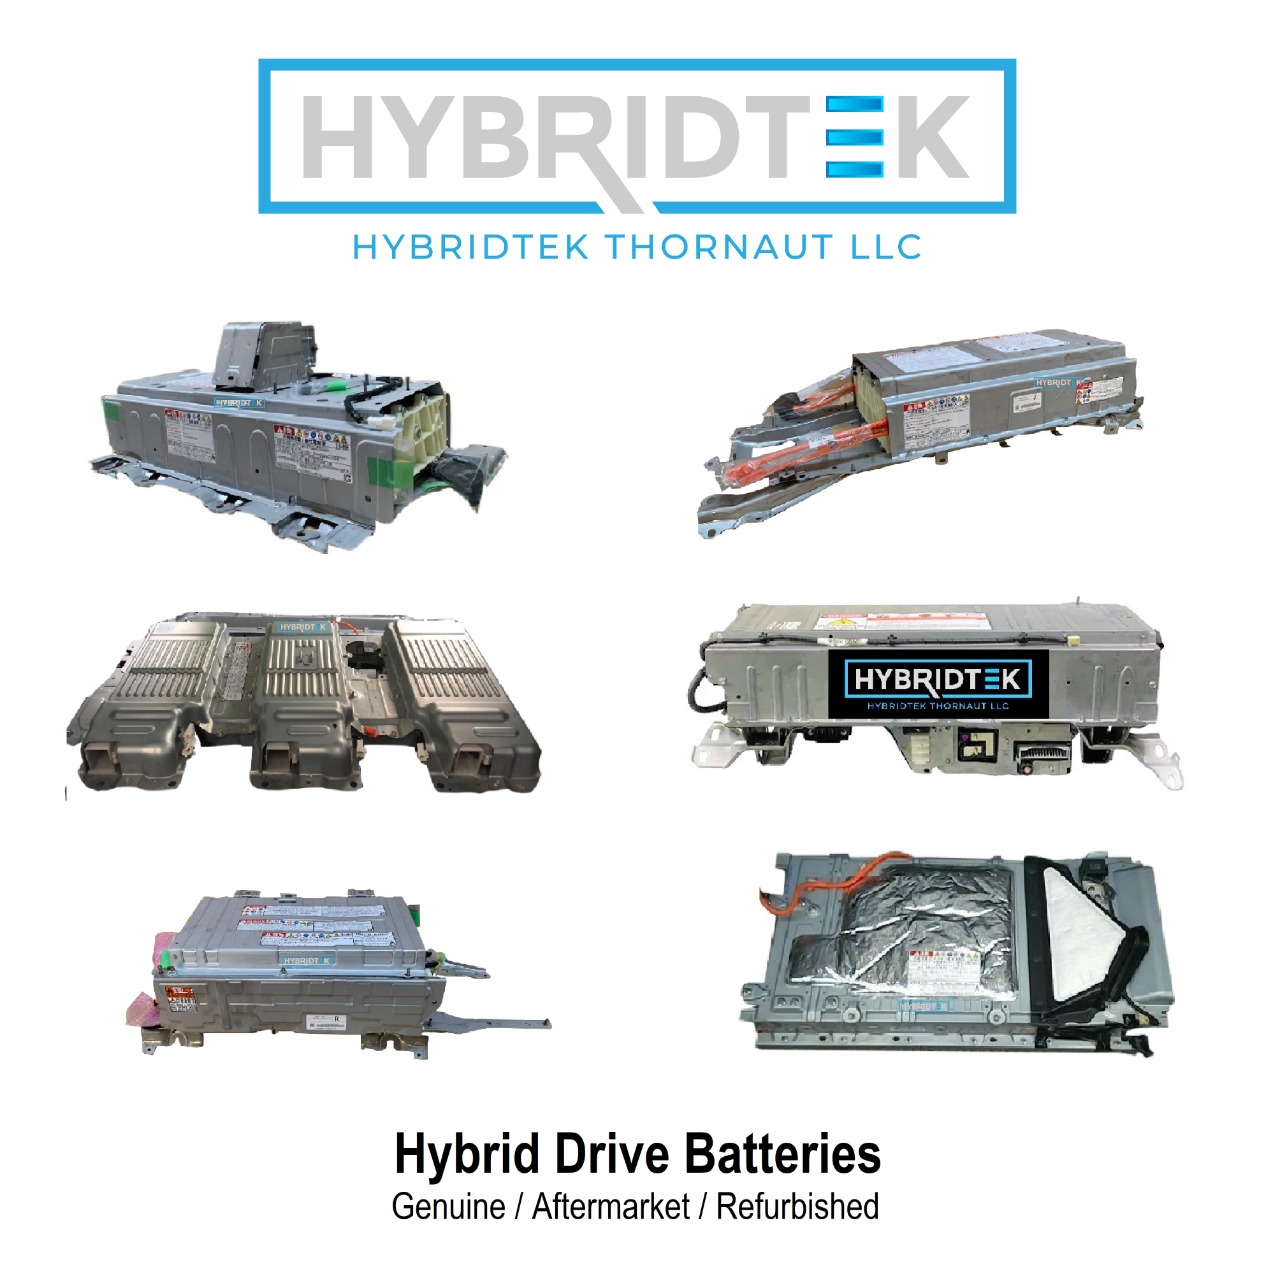 Hybridtek thornaut LLC